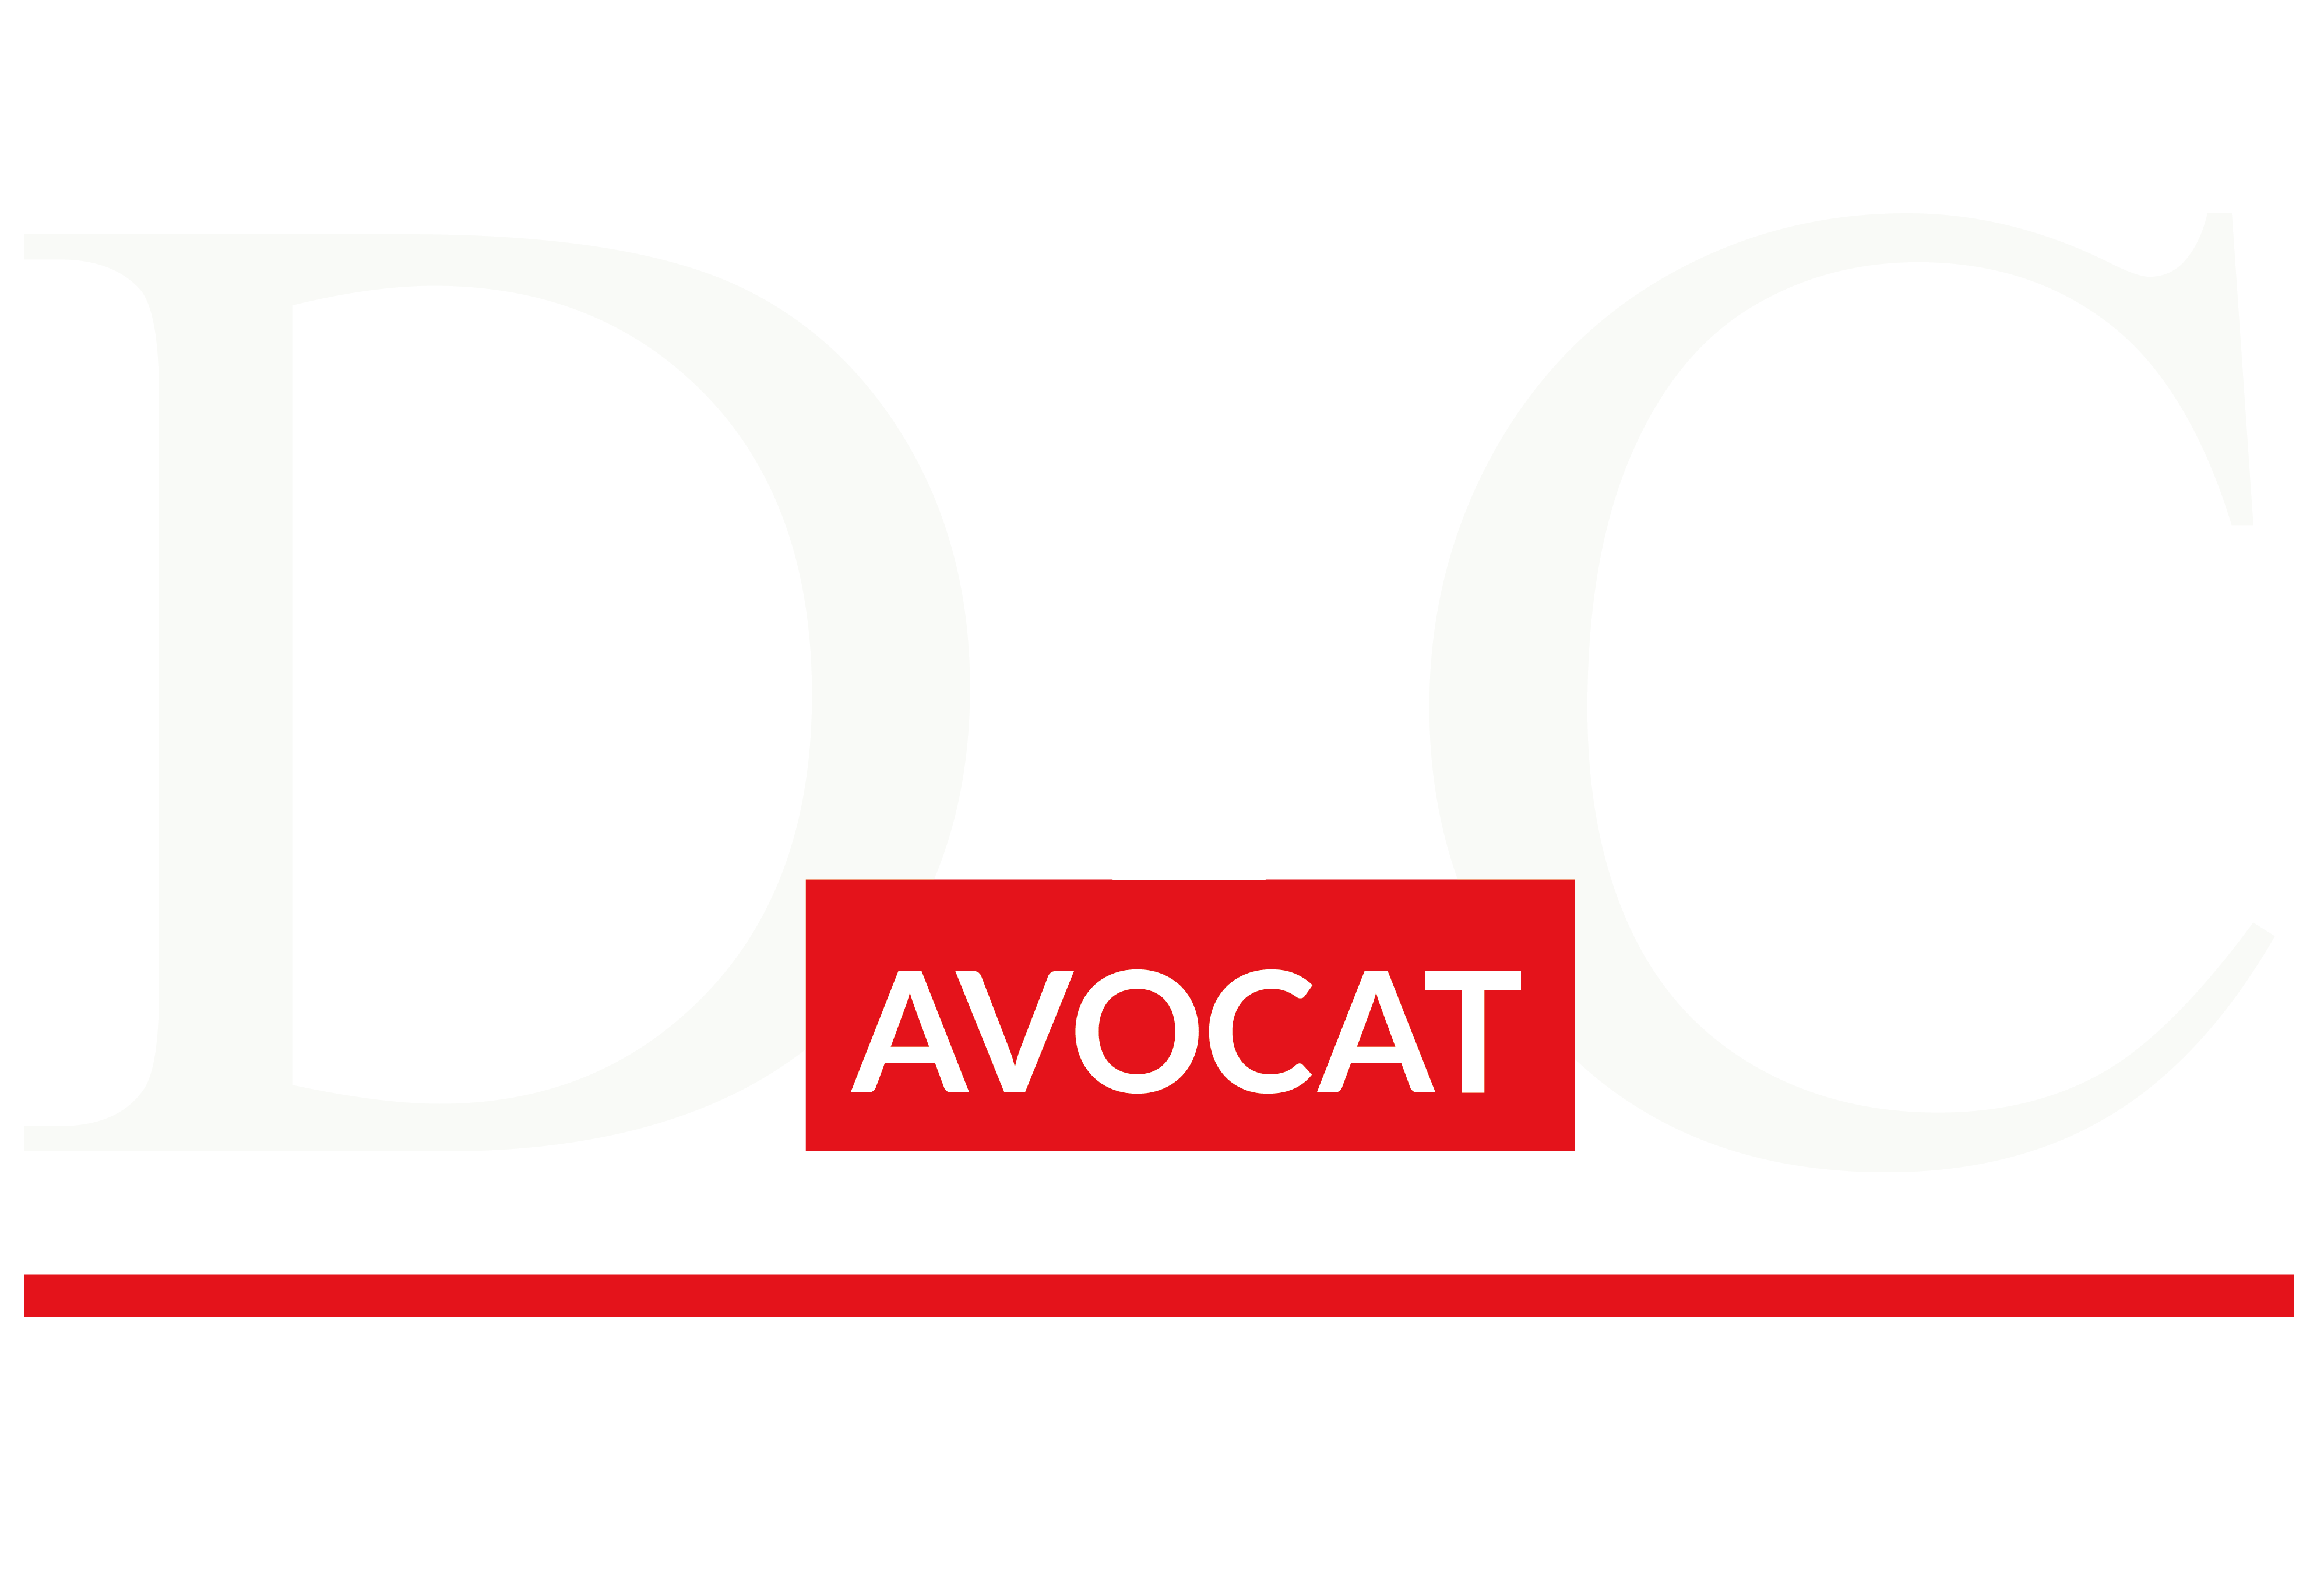 Cabinet d'avocat Dannièle CHEVROTIN basé à Angers intervenant sur toute la France